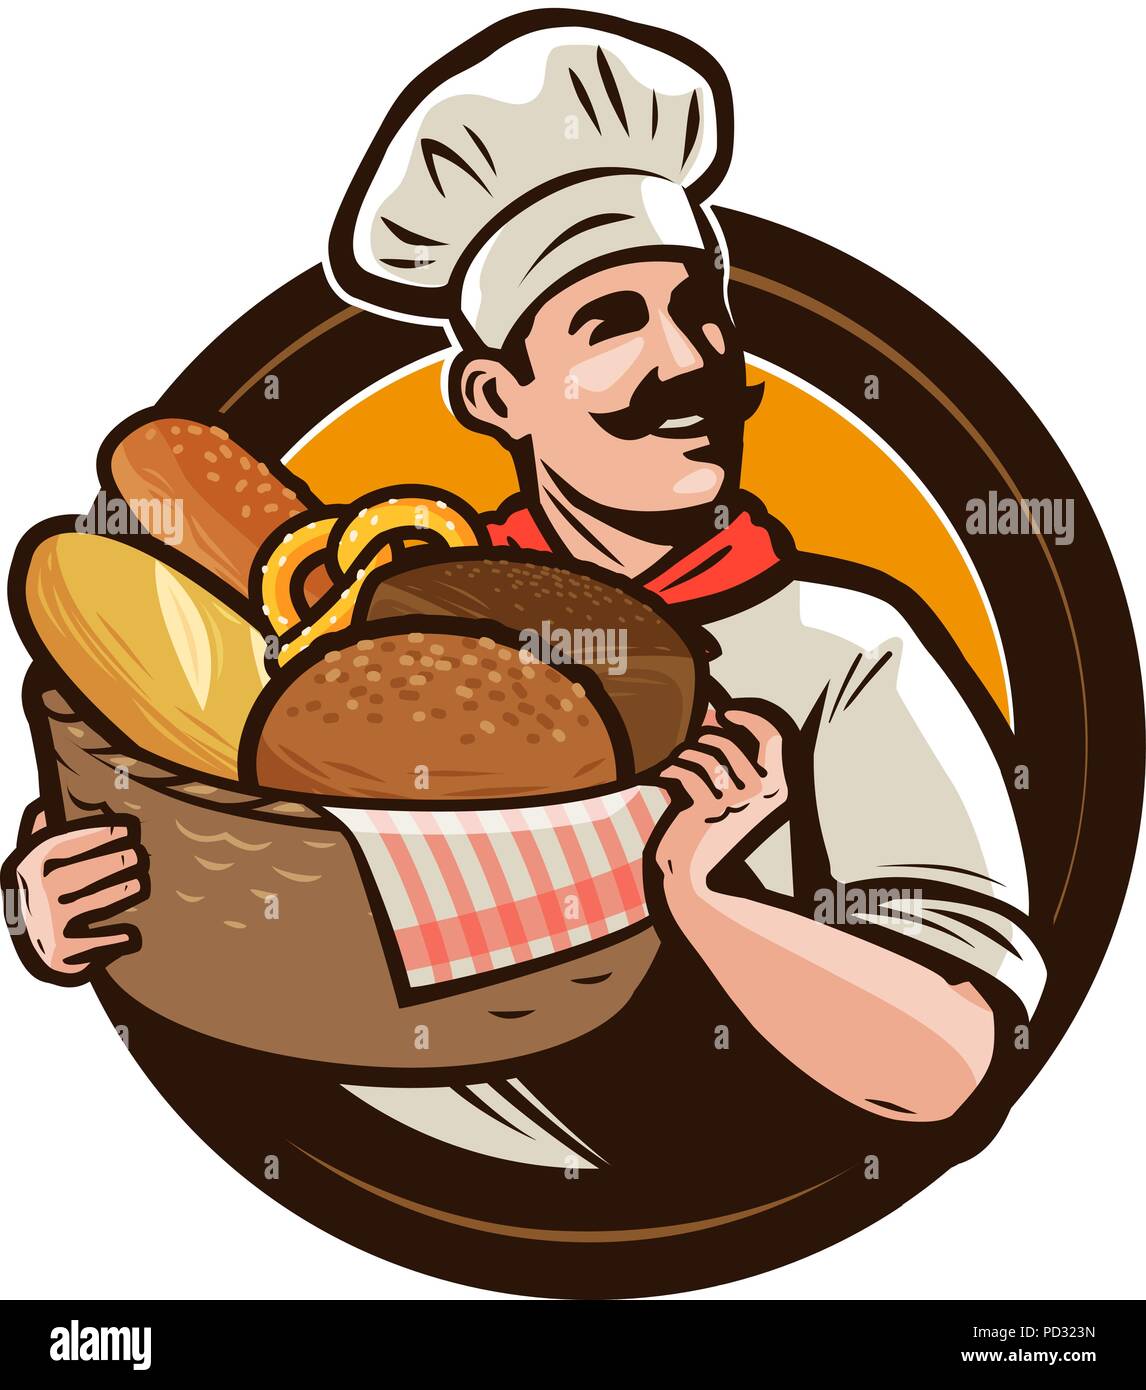 Panificio, bakehouse logo o etichetta. Baker con un cesto di vimini di pane appena sfornato. Illustrazione Vettoriale Illustrazione Vettoriale